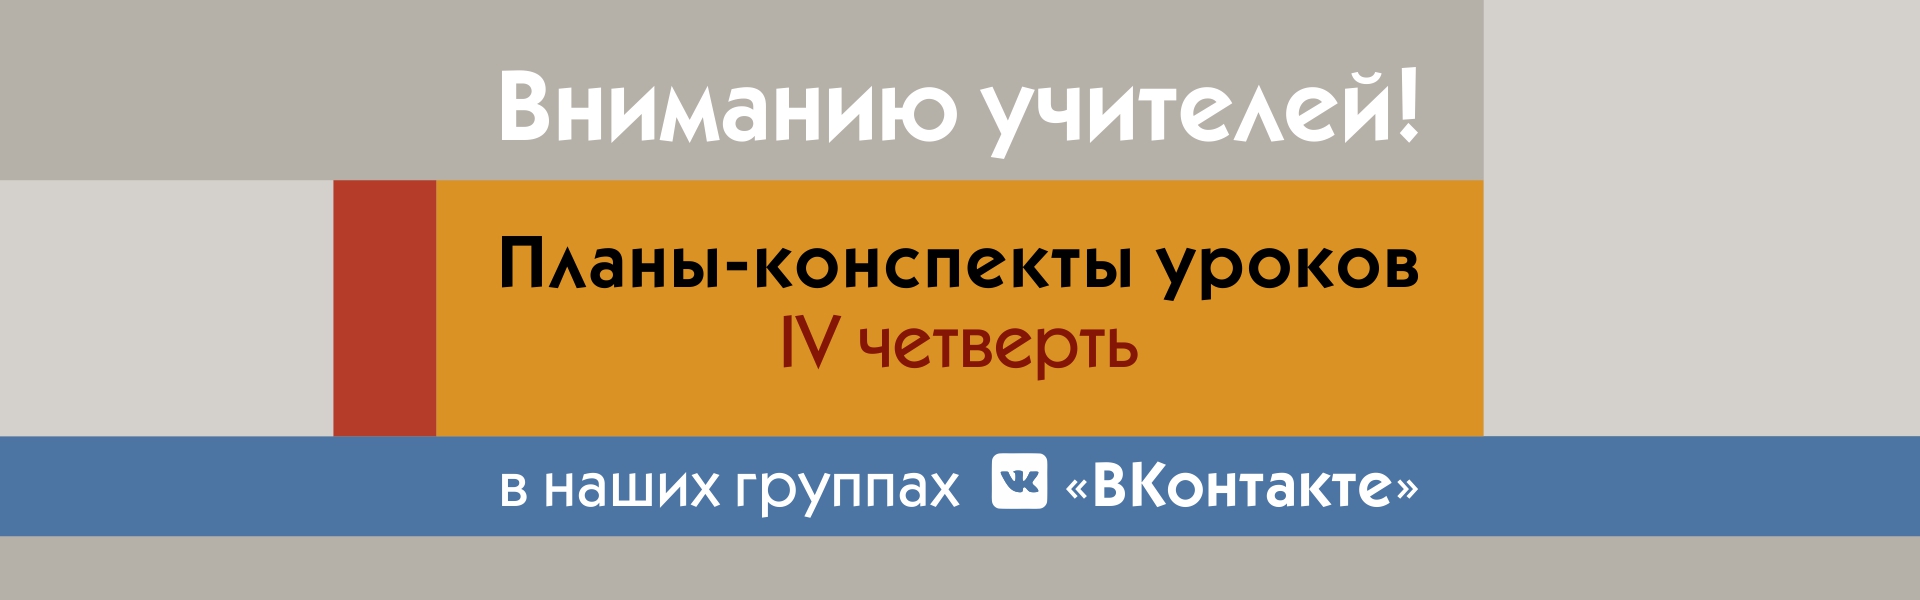 Вниманию учителей! Планы-конспекты для организации уроков в IV четверти теперь можно скачать «ВКонтакте»